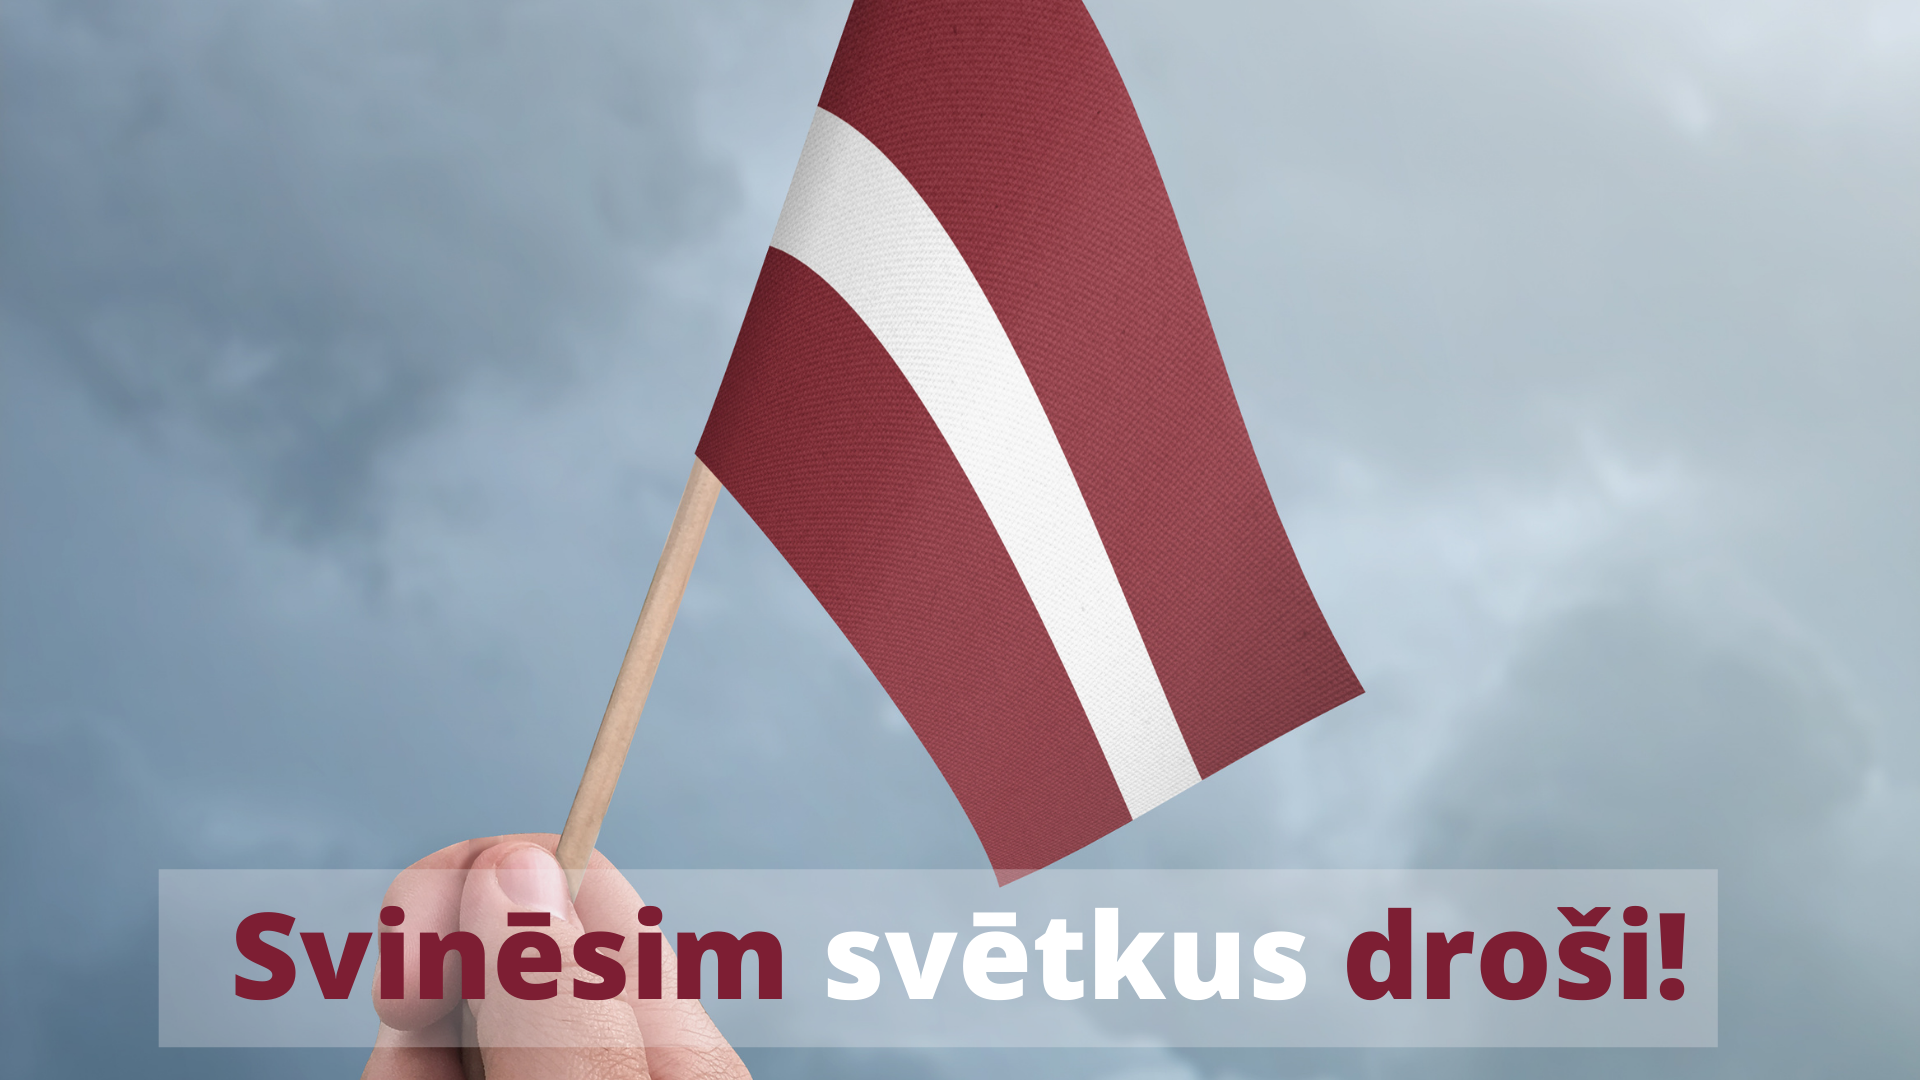 Izzināsim Latviju un svinēsim valsts svētkus droši!